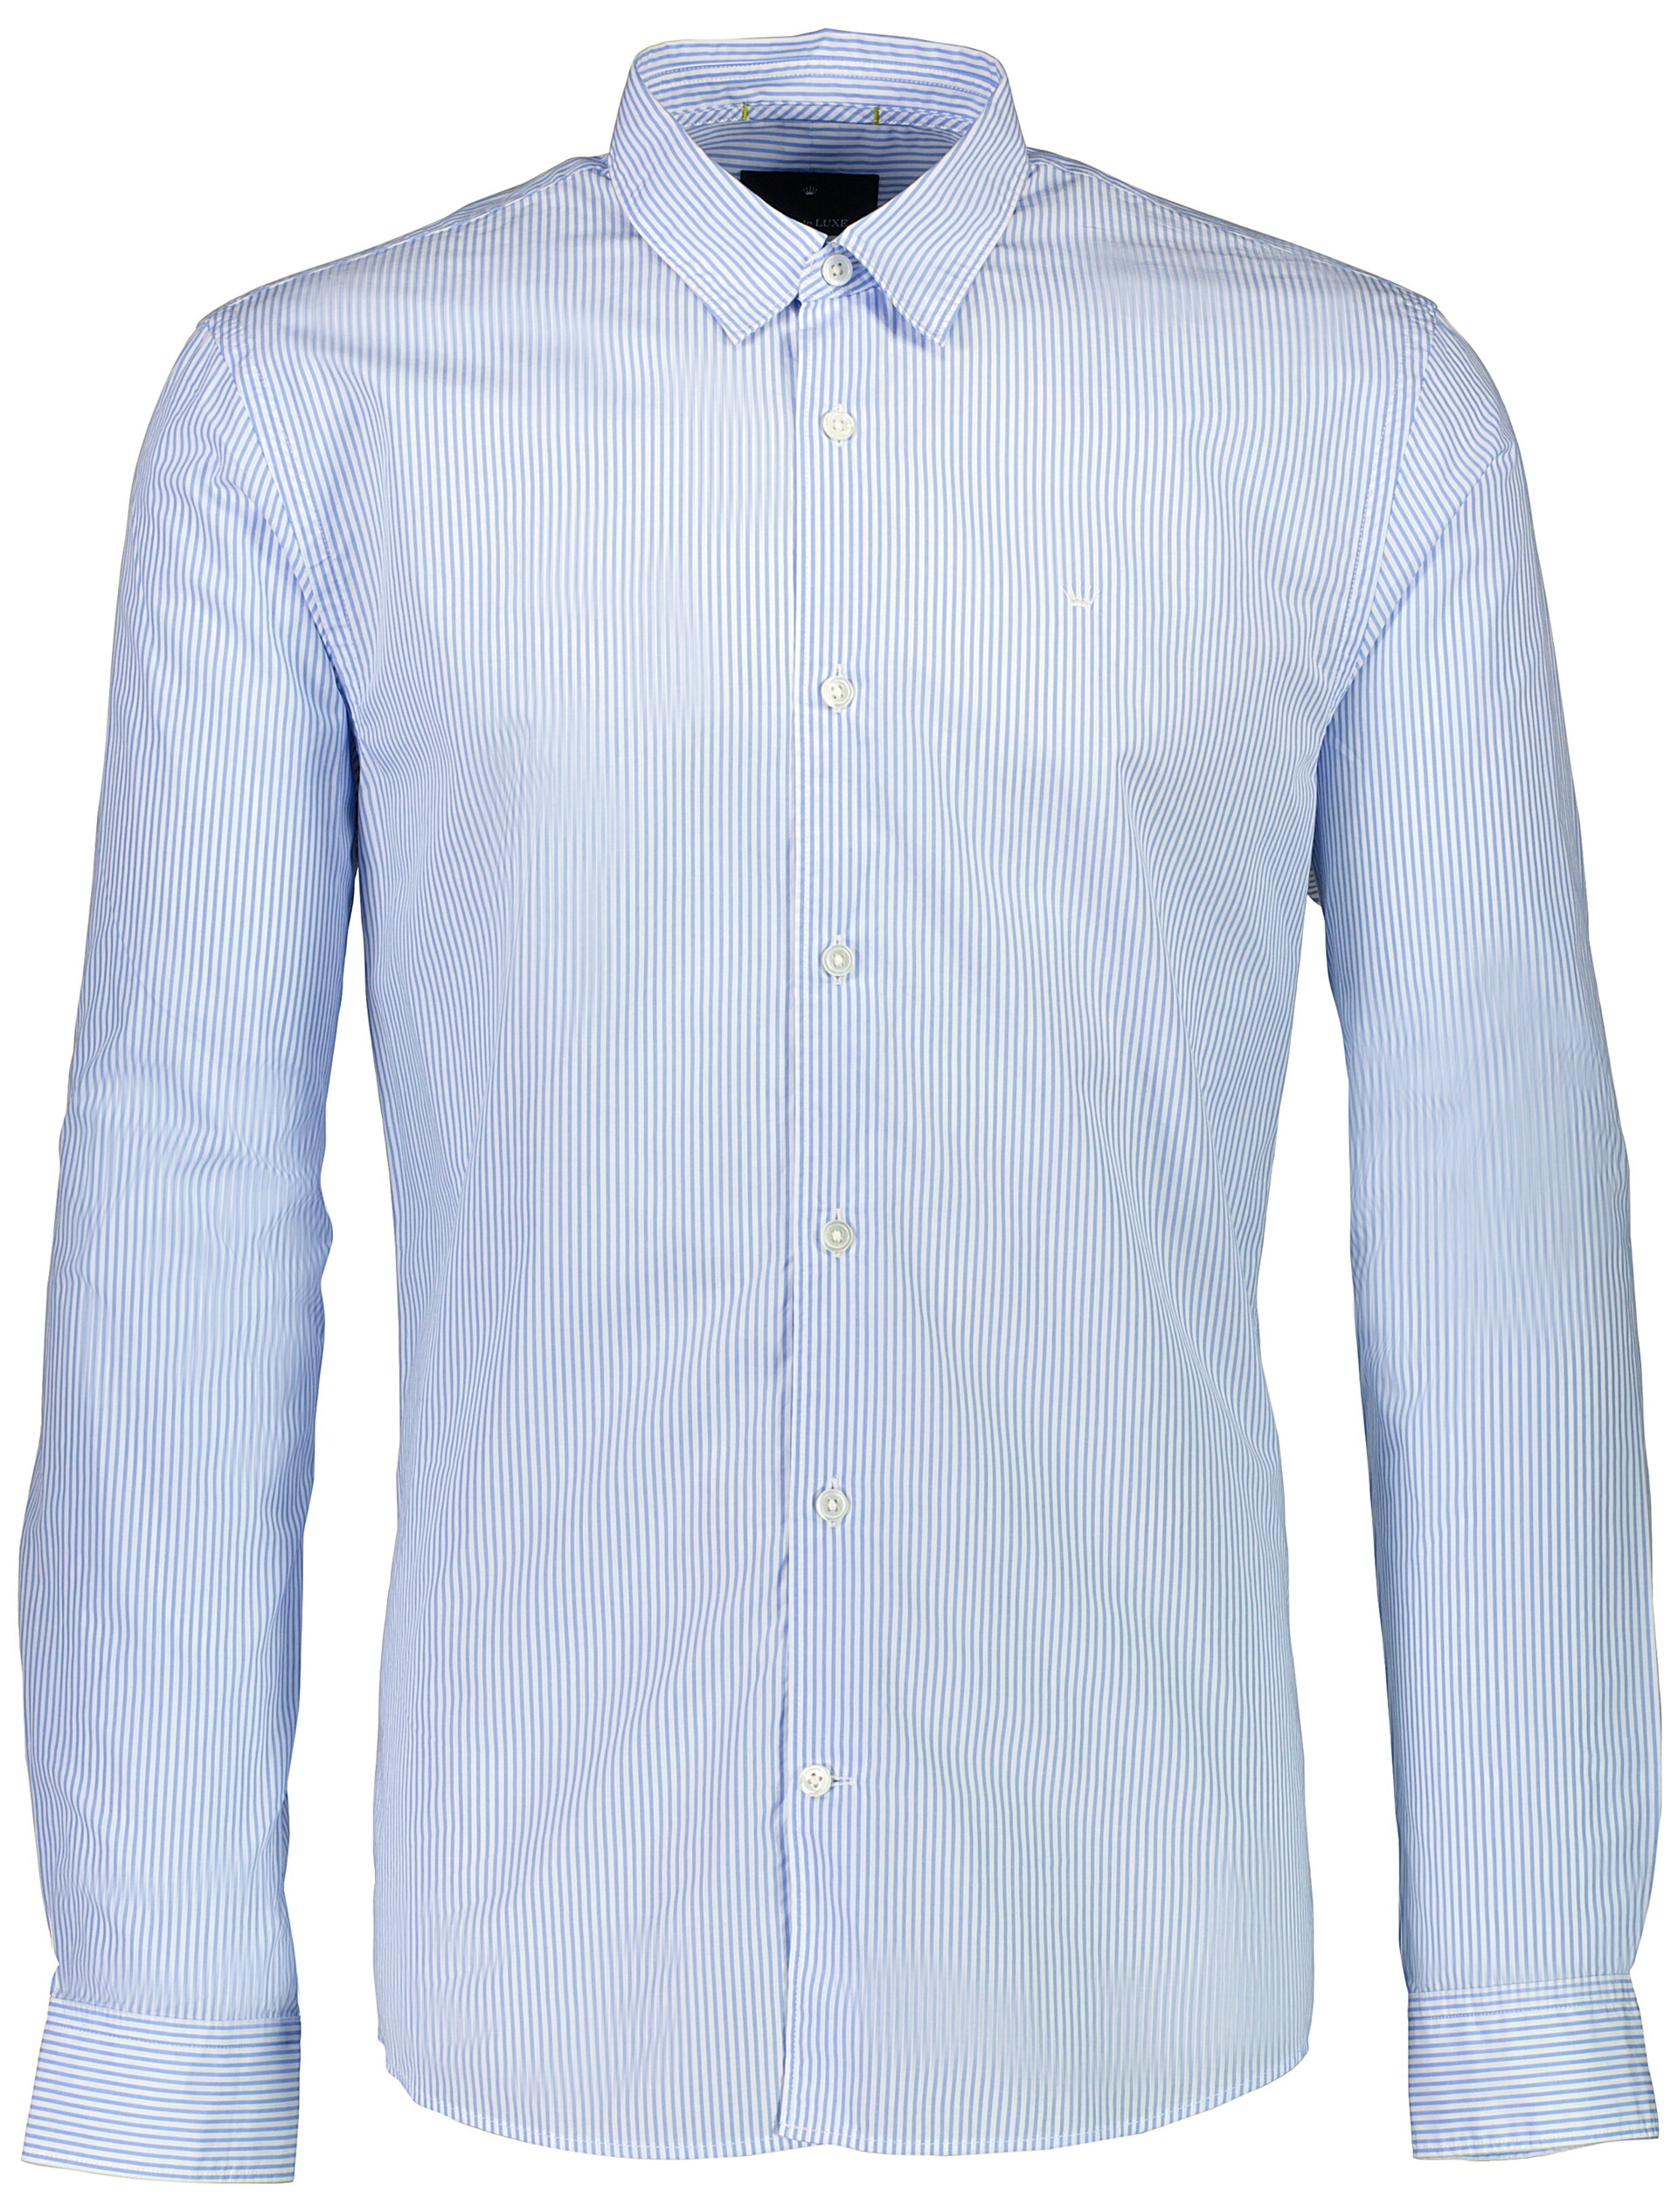 Junk de Luxe Business casual shirt blue / light blue